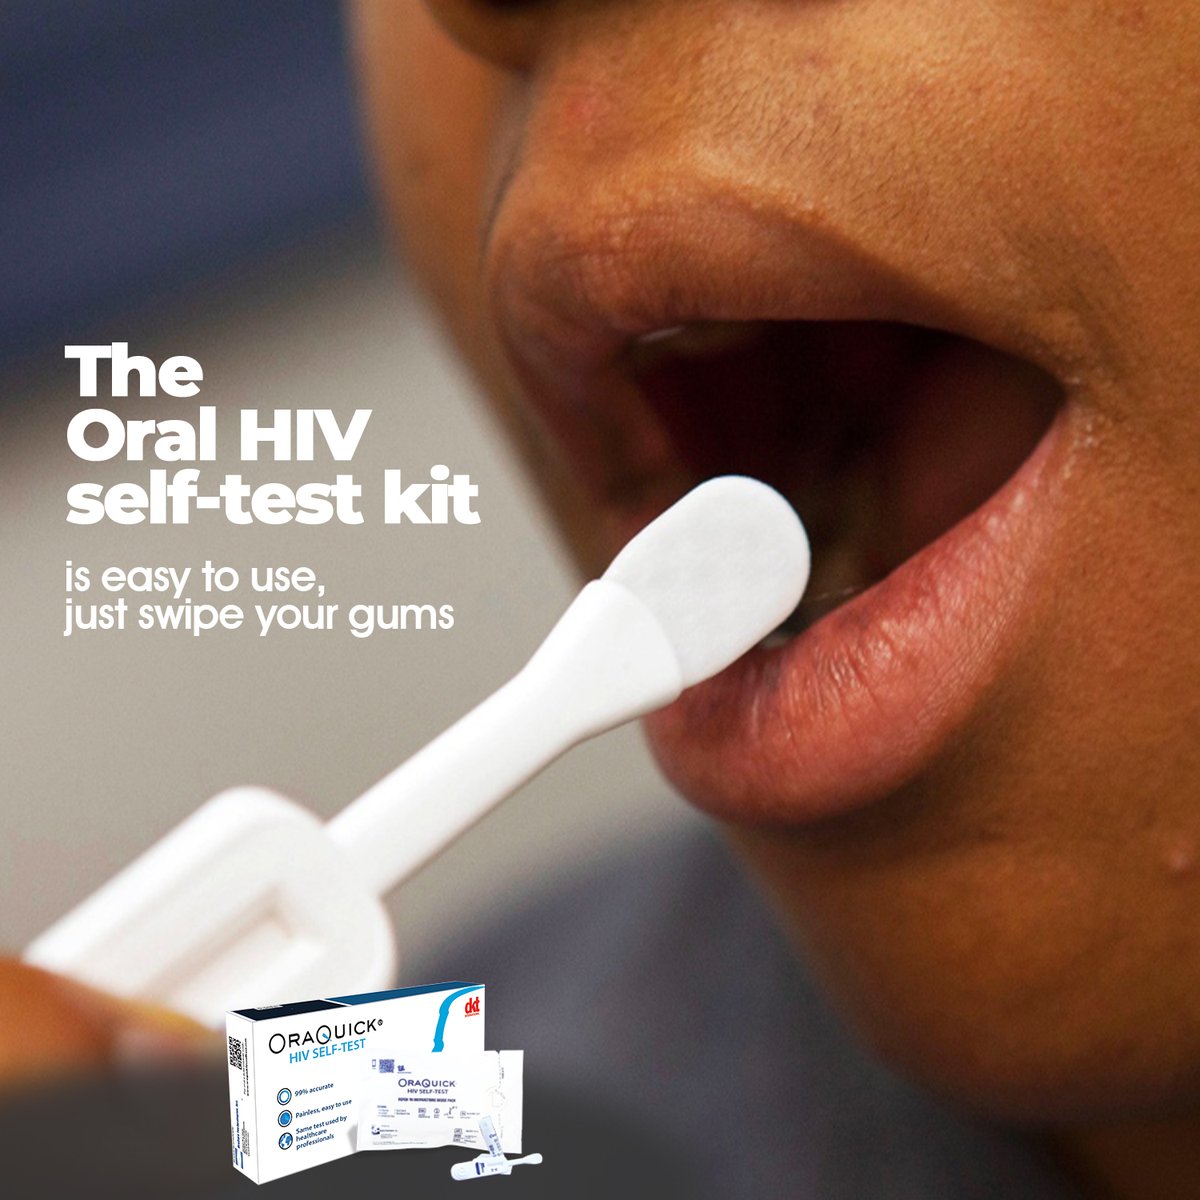 ORAL HIV SELF-TEST